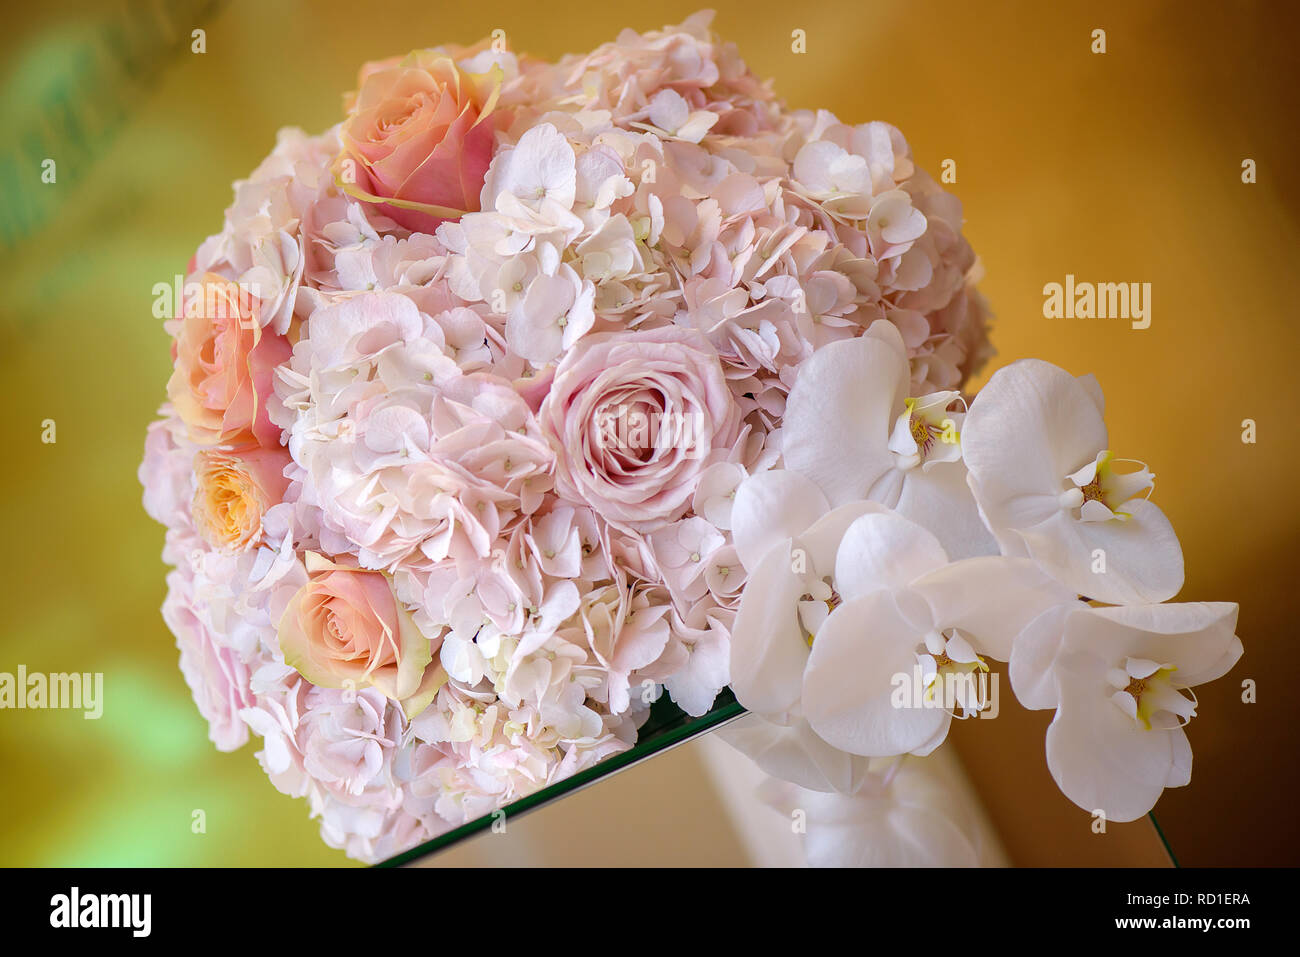 Klassische Blumenschmuck in einem Pastell pink hydrangea runde Blumenstrauß mit Rosen und Orchideen, auf einem edlen Glas Unterstützung als Mittelstück eingestellt Stockfoto